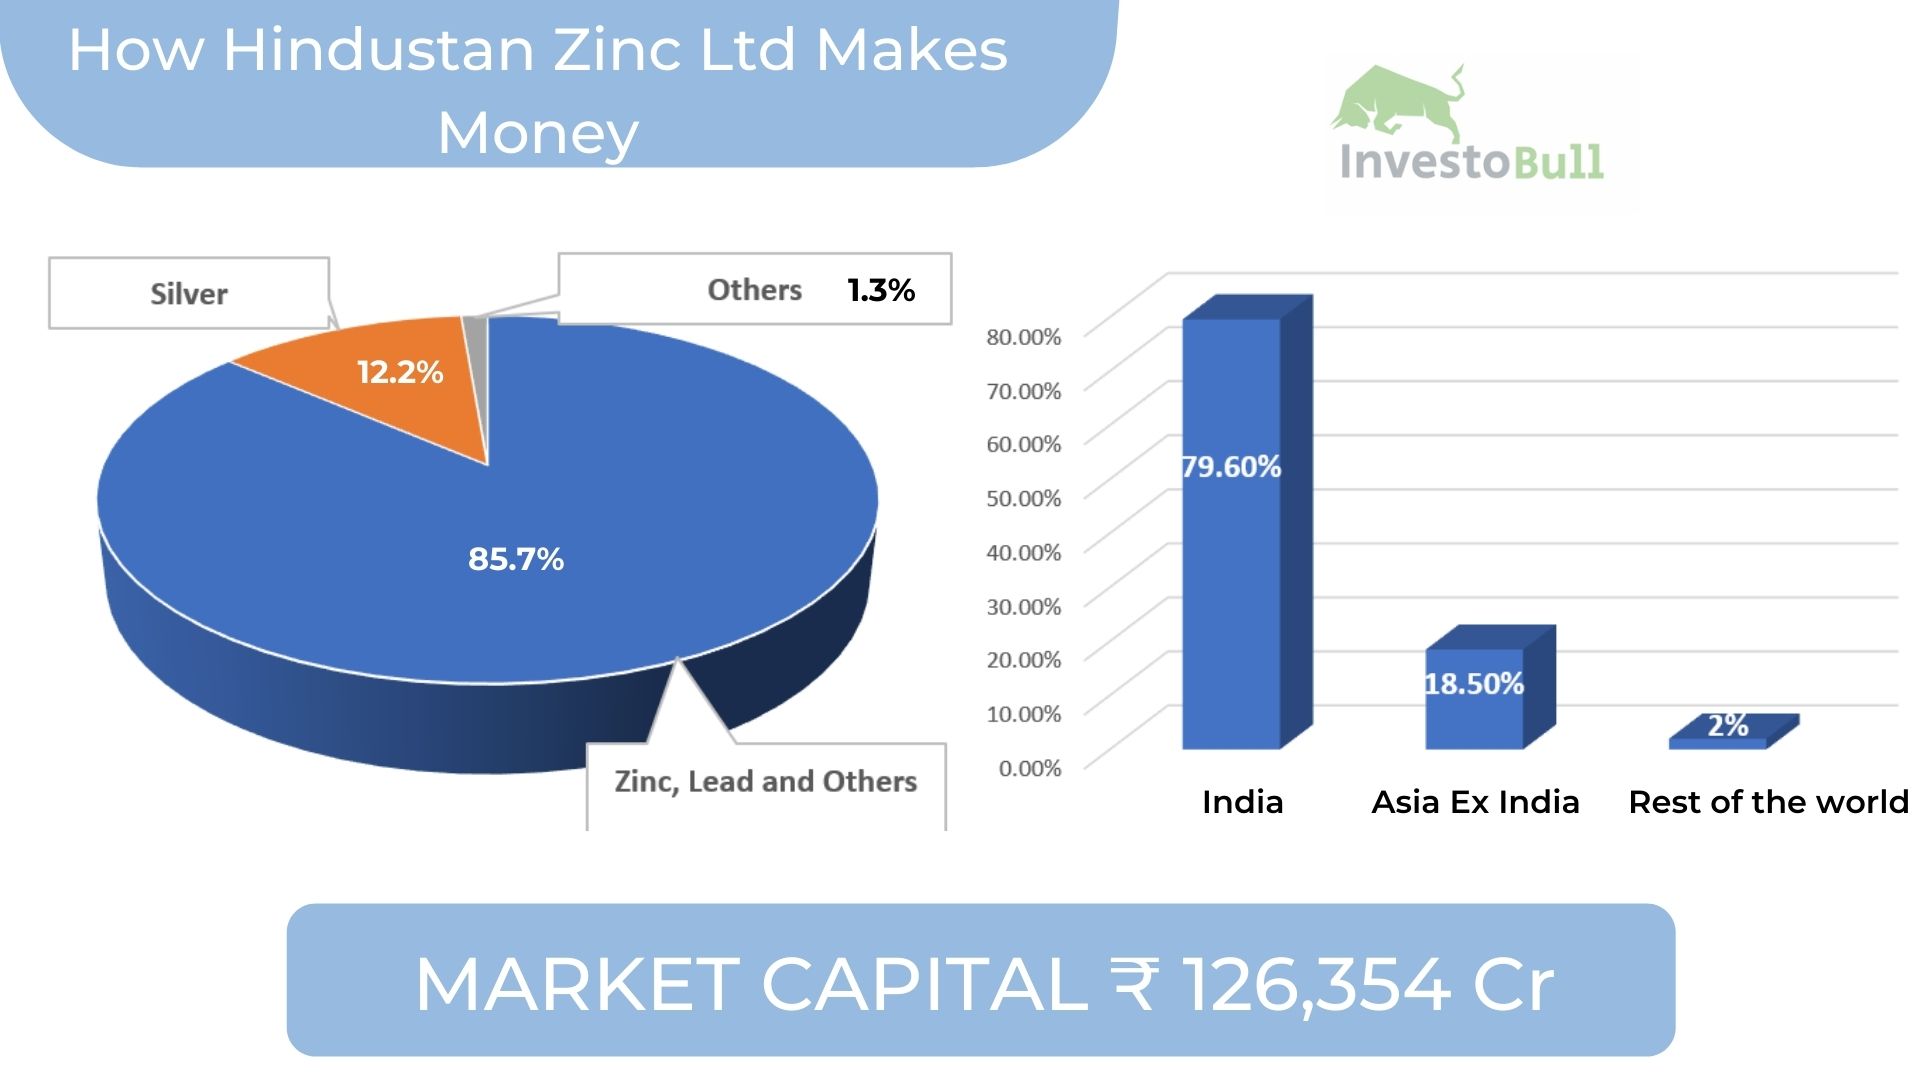 How Hindustan Zinc makes money